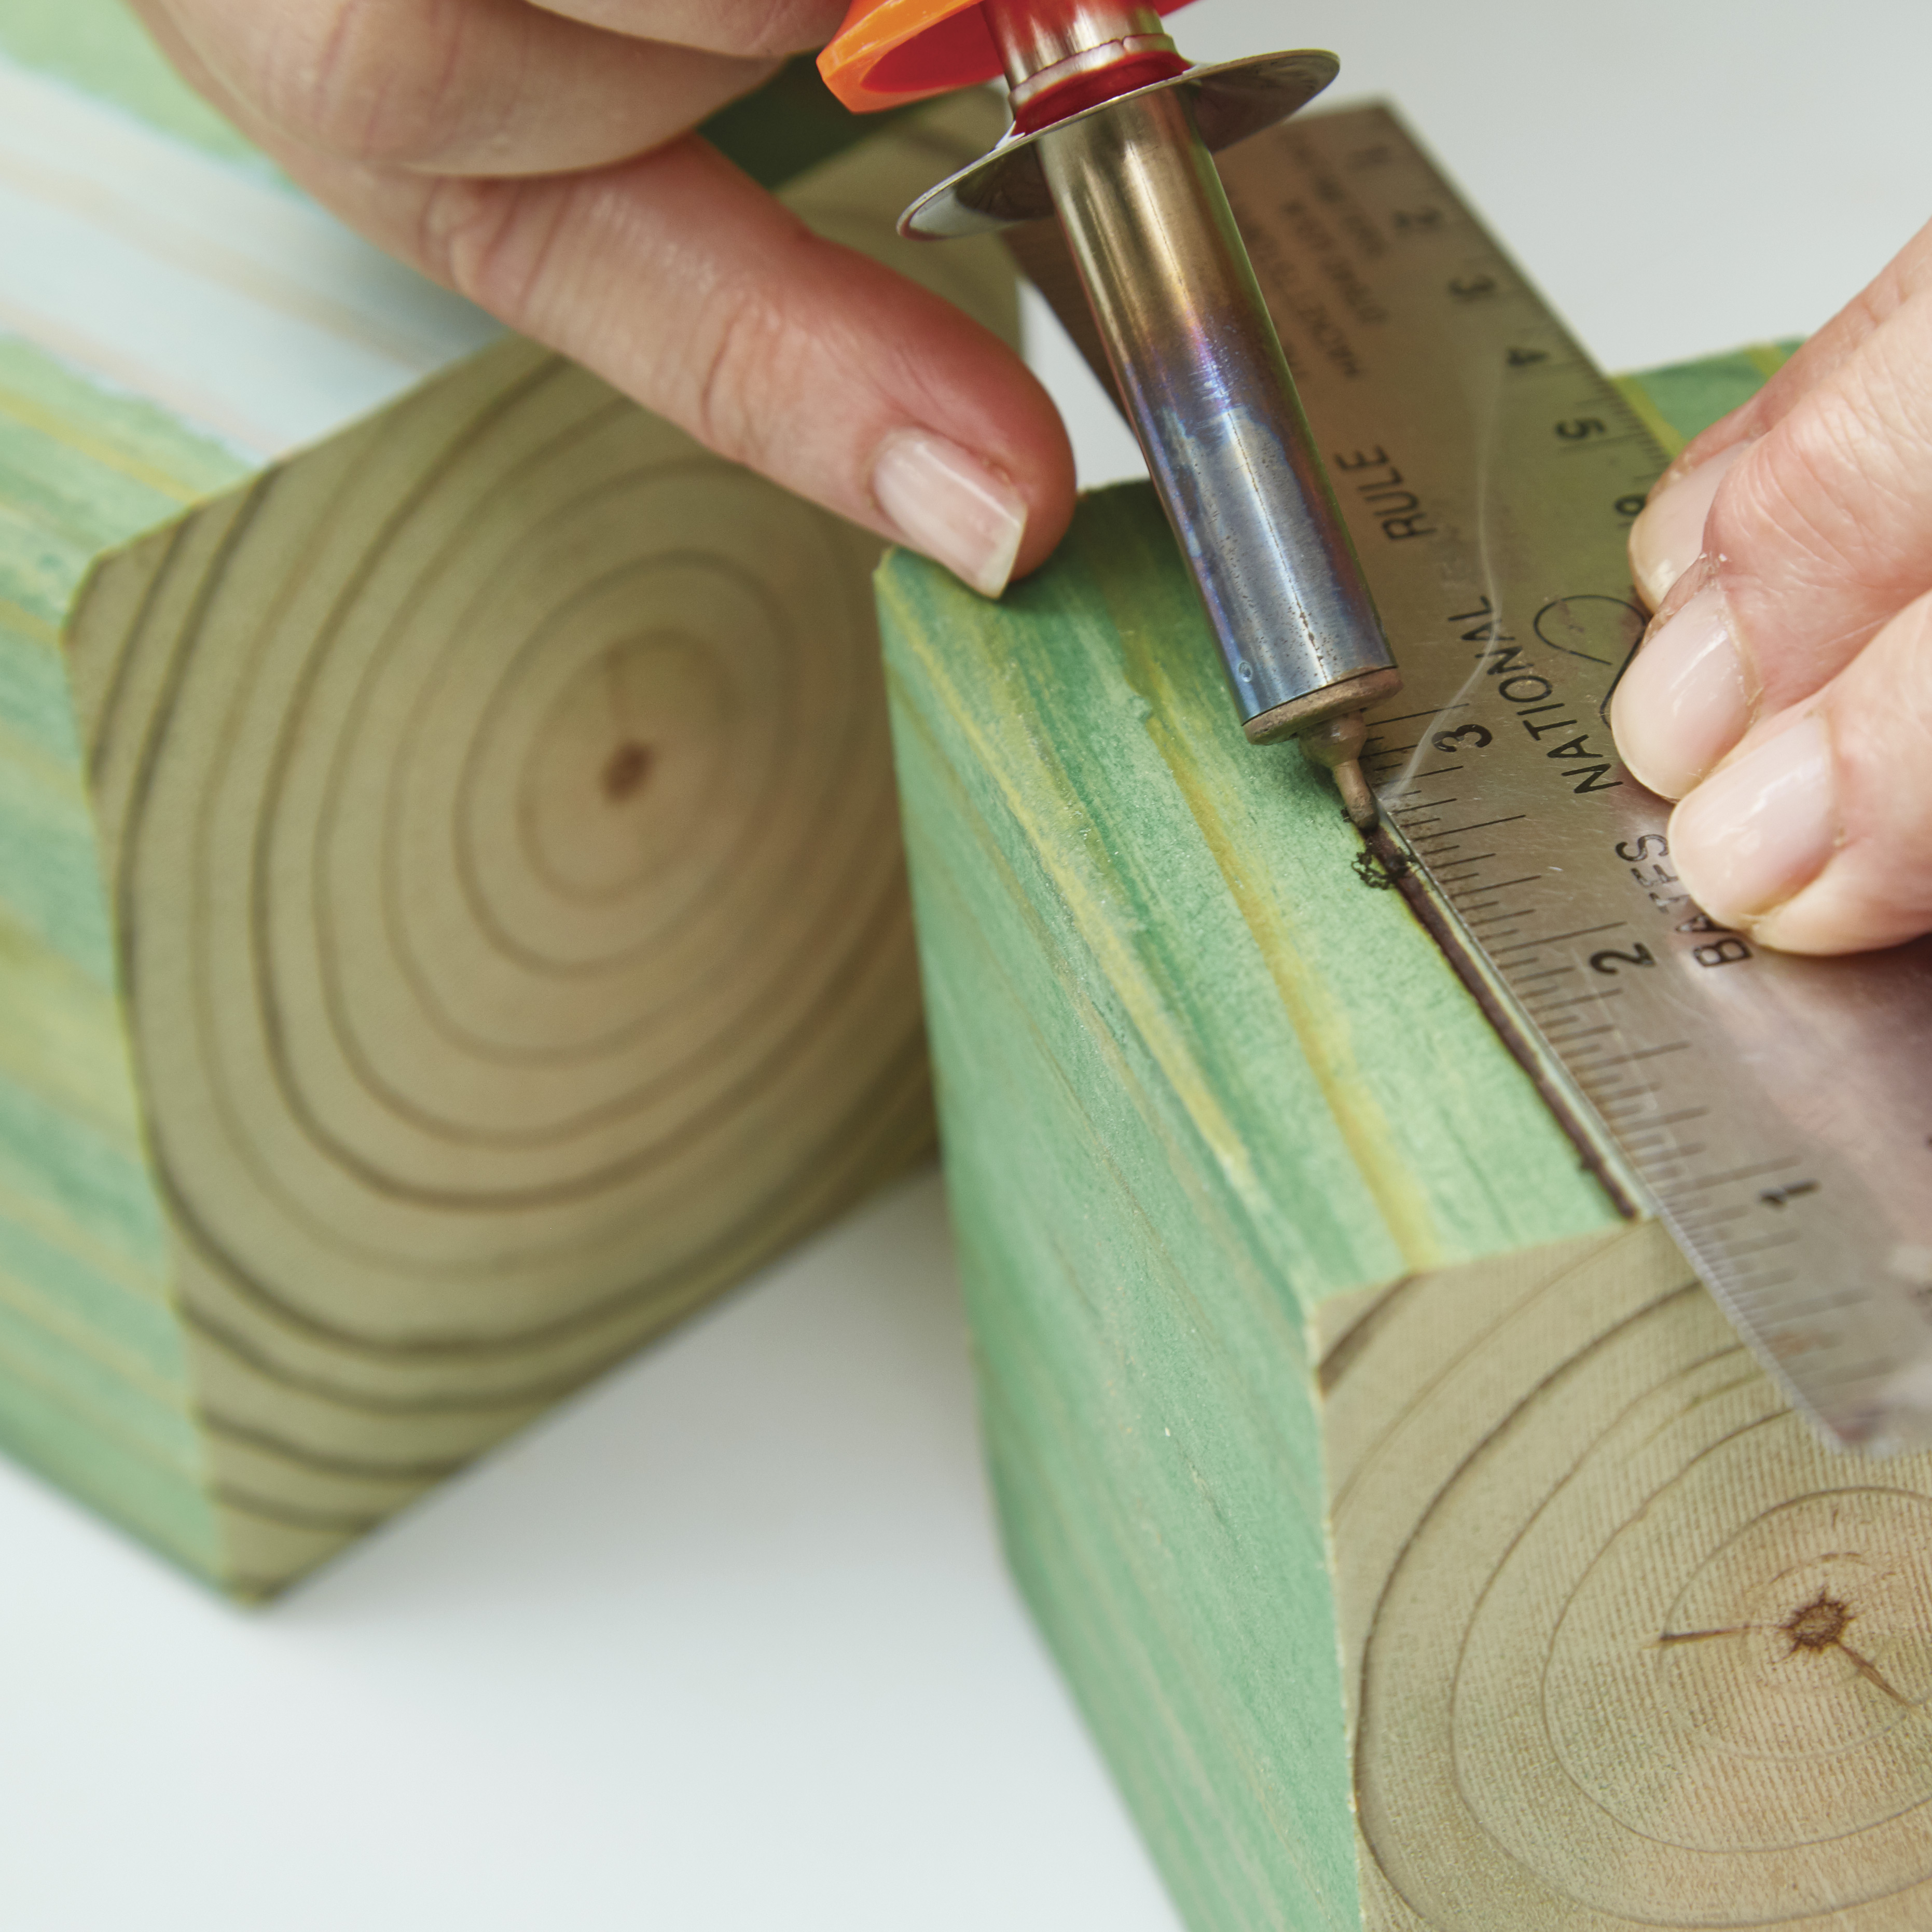 diy-garden-poles-woodburn: Položením ruky na druhý blok získáte při používání nástroje na spalování dřeva větší kontrolu.